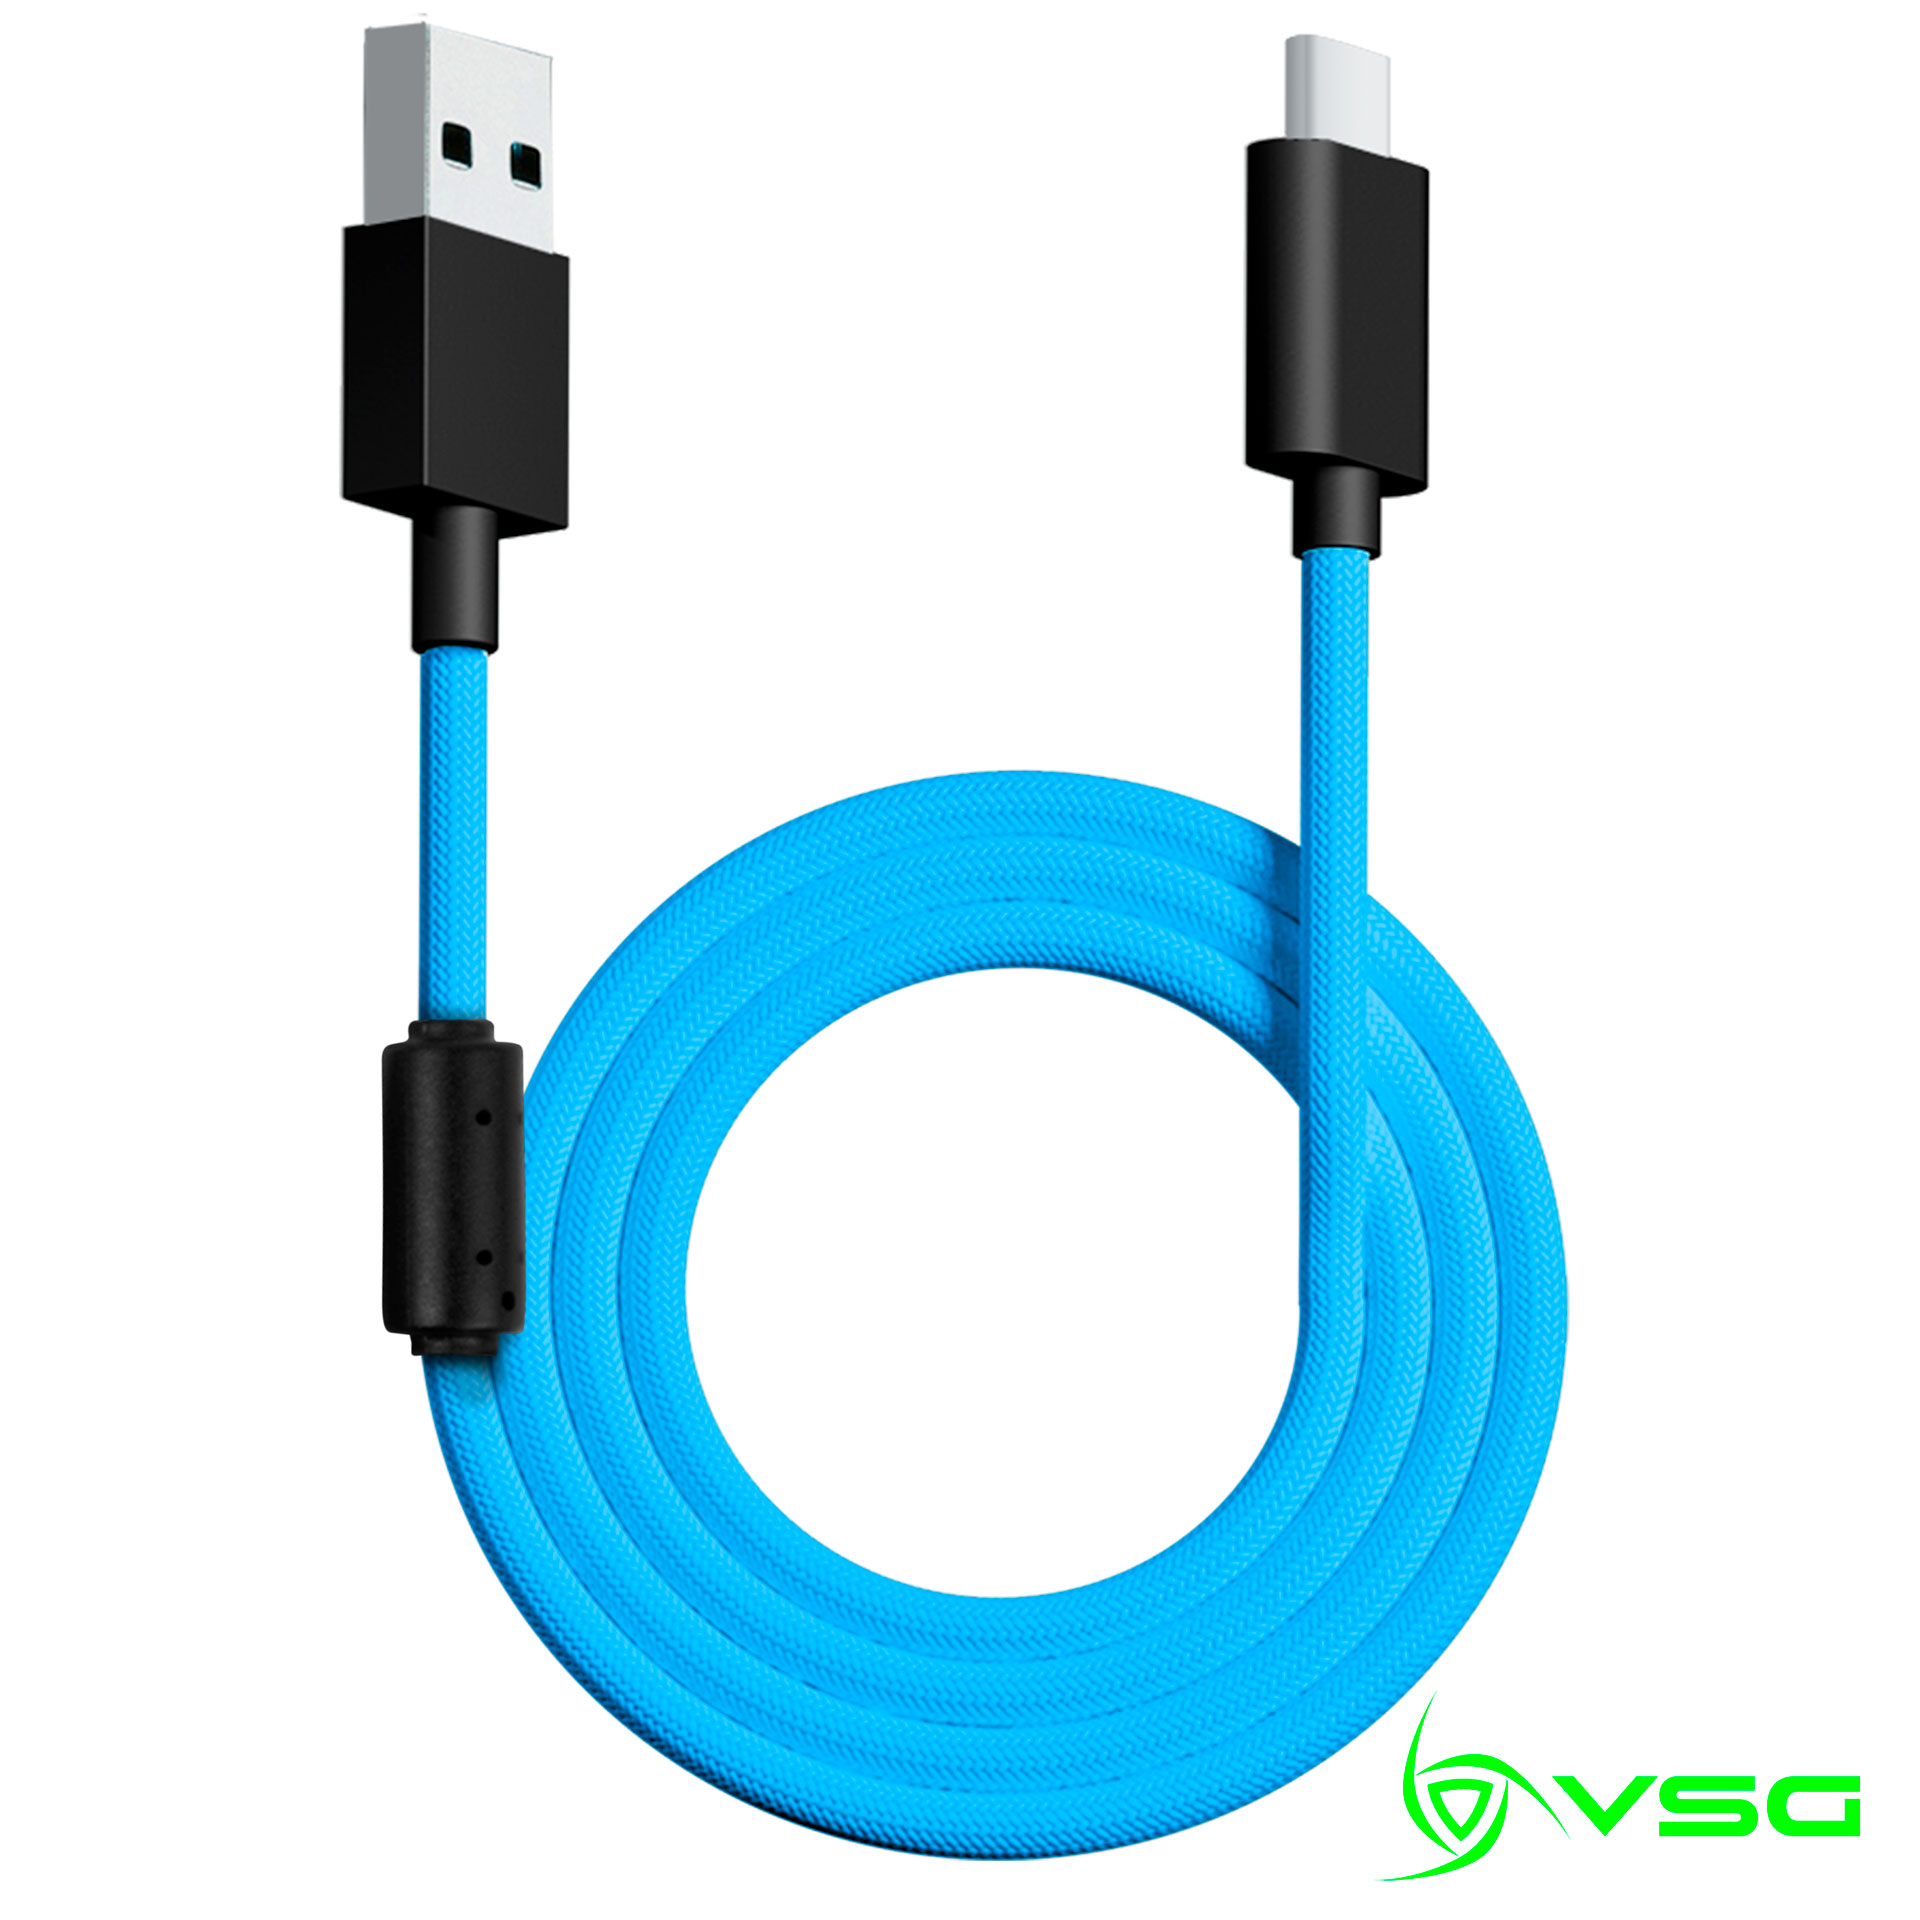 CABLE USB VSG TIPO C AZUL - VG-CABLE-AQ-BLUE / Precio: $119.00